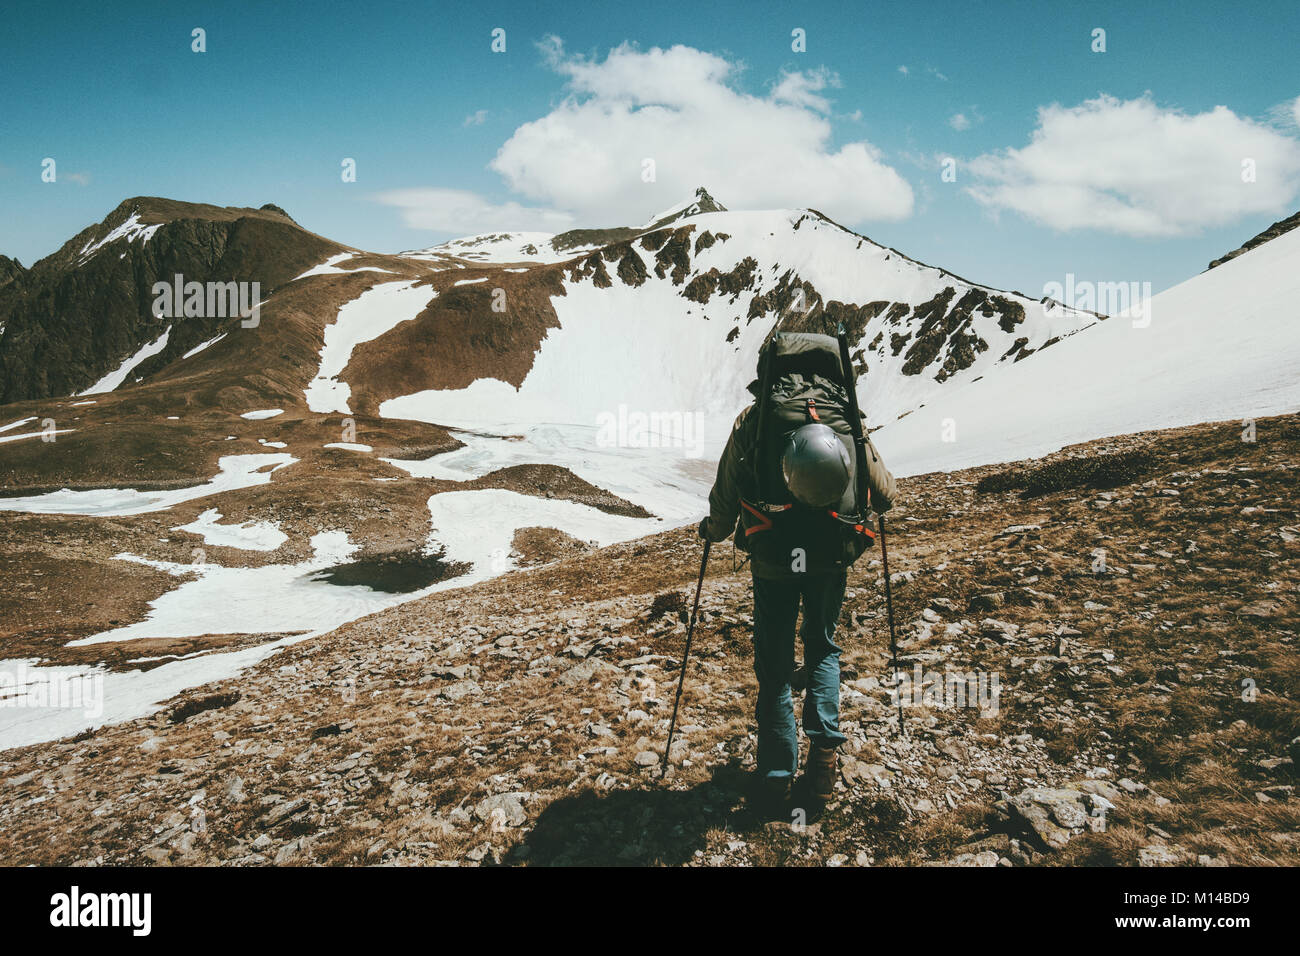 Sac à dos de randonnée homme avec grand style de voyage concept de survie en plein air aventure vacances actives sport escalade montagne nature sauvage Banque D'Images